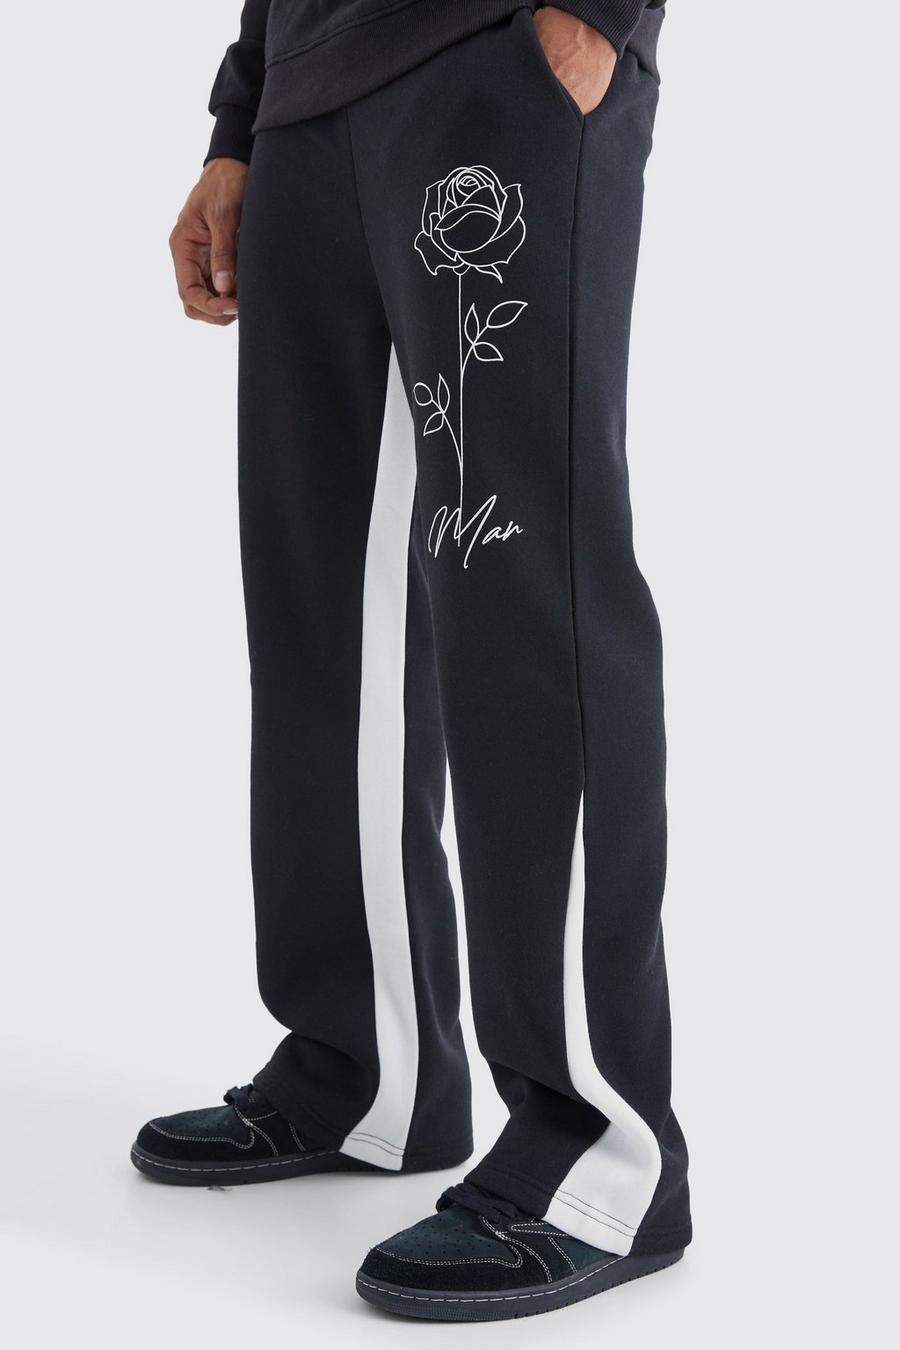 Pantalón deportivo MAN con refuerzo y estampado de rosas, Black image number 1